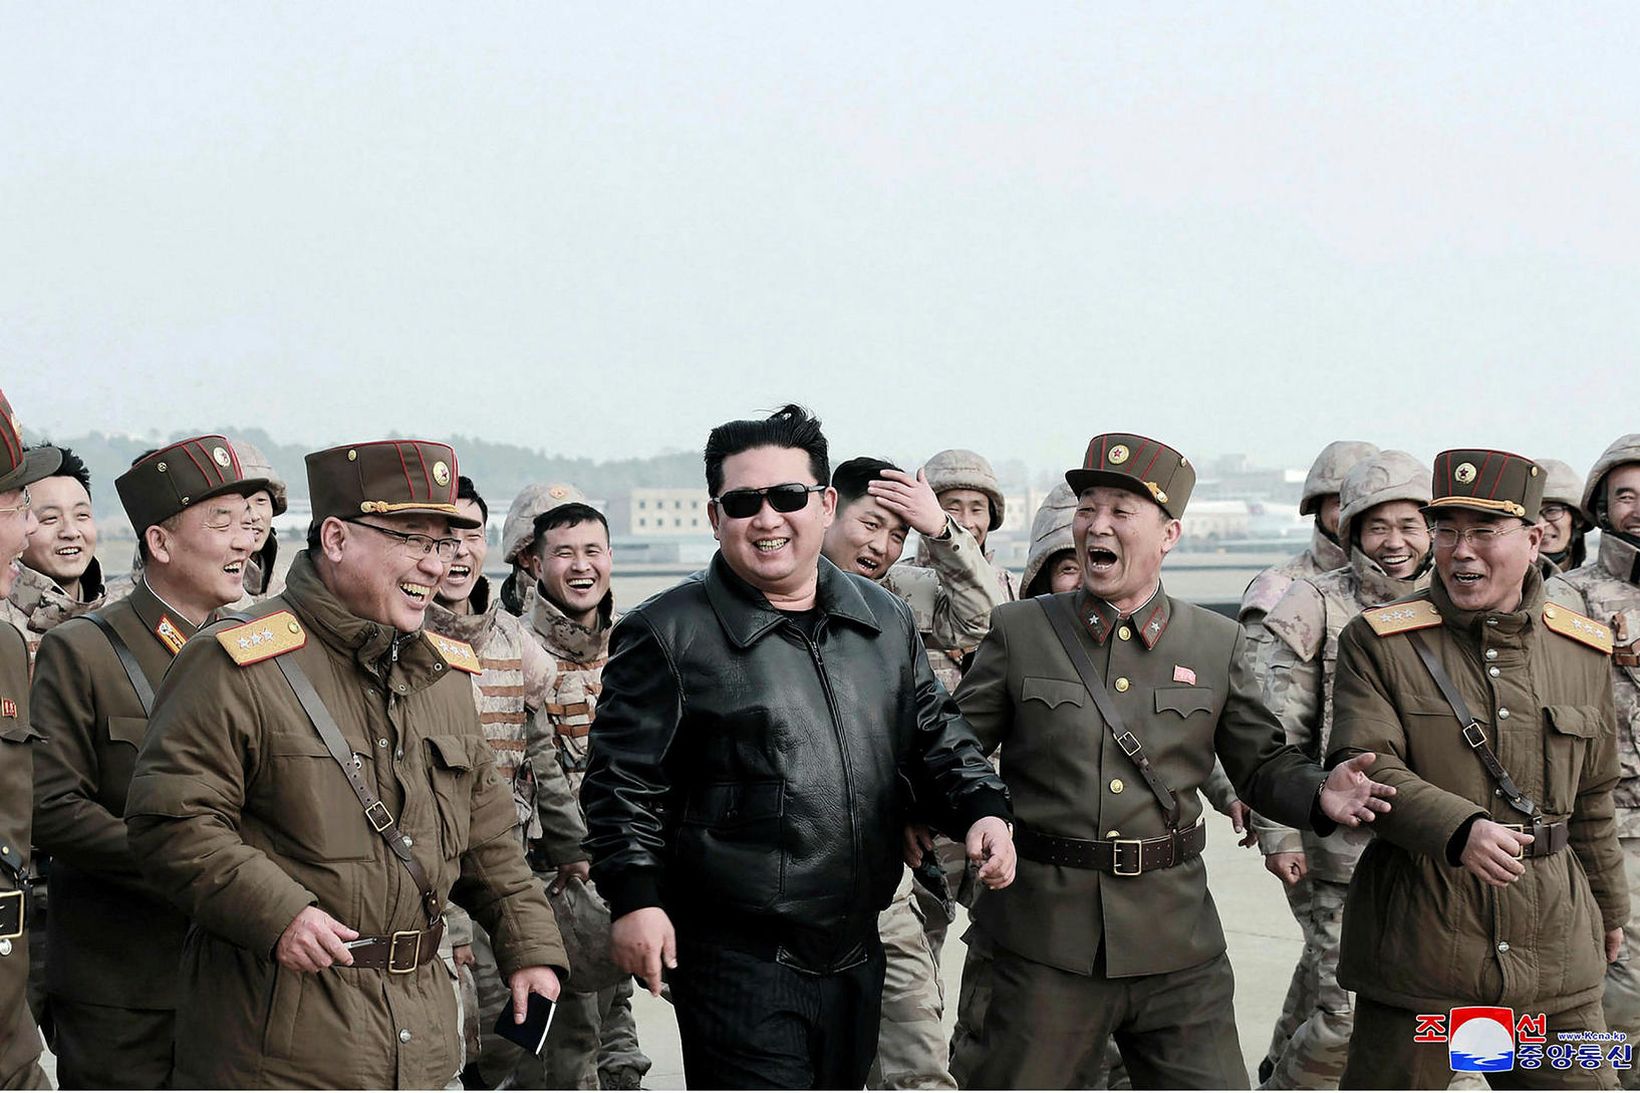 Kim Jong-un glaðbeittur ásamt hermönnum á meðan á tilraunaskotinu stóð.